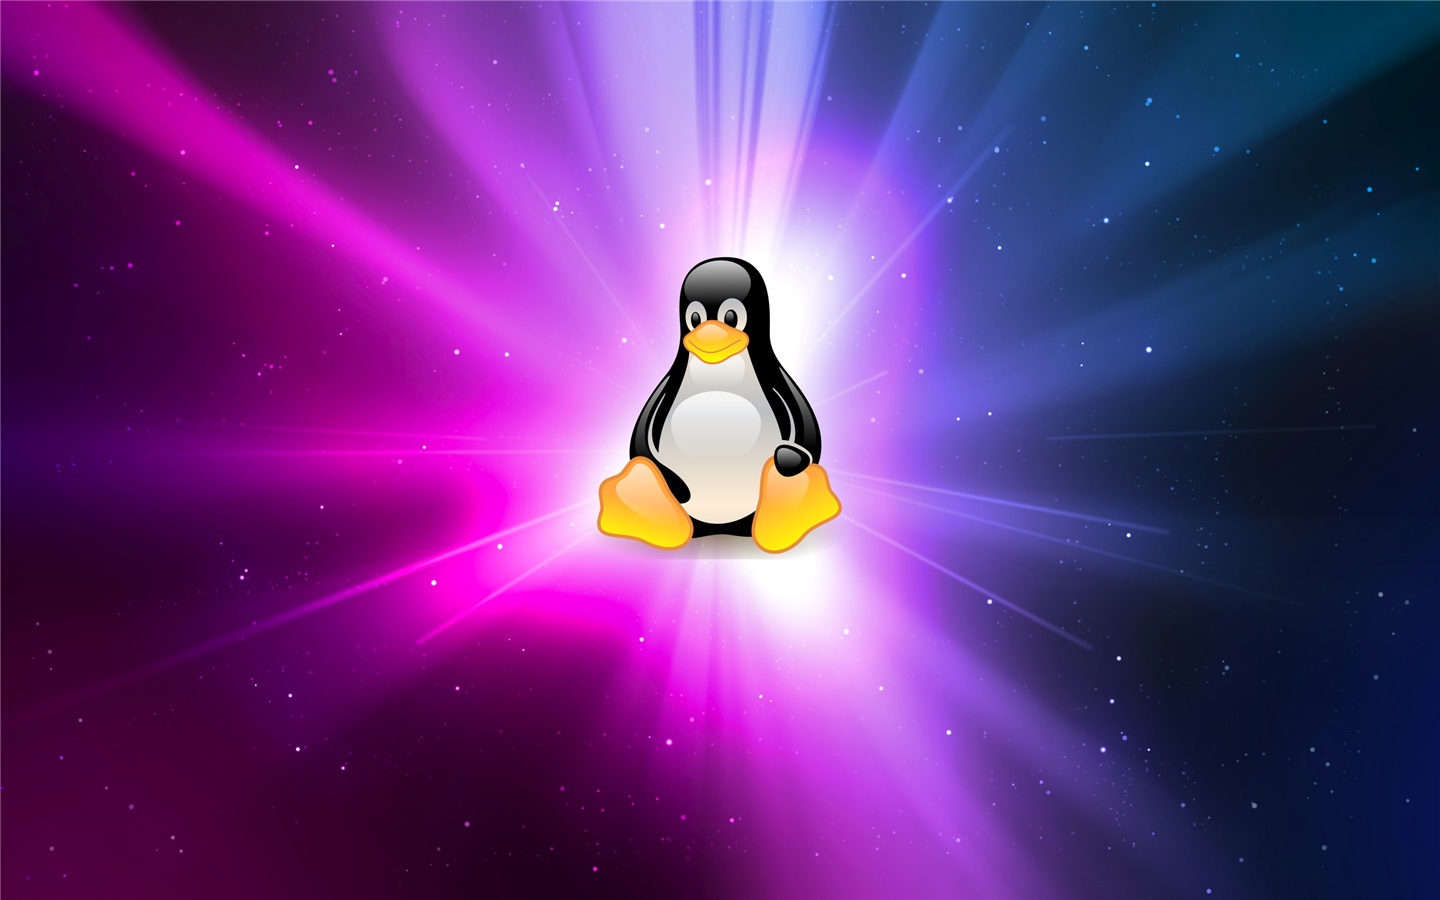 Ubuntu 系统内核发现拒绝服务或执行任意代码漏洞，需尽快升级